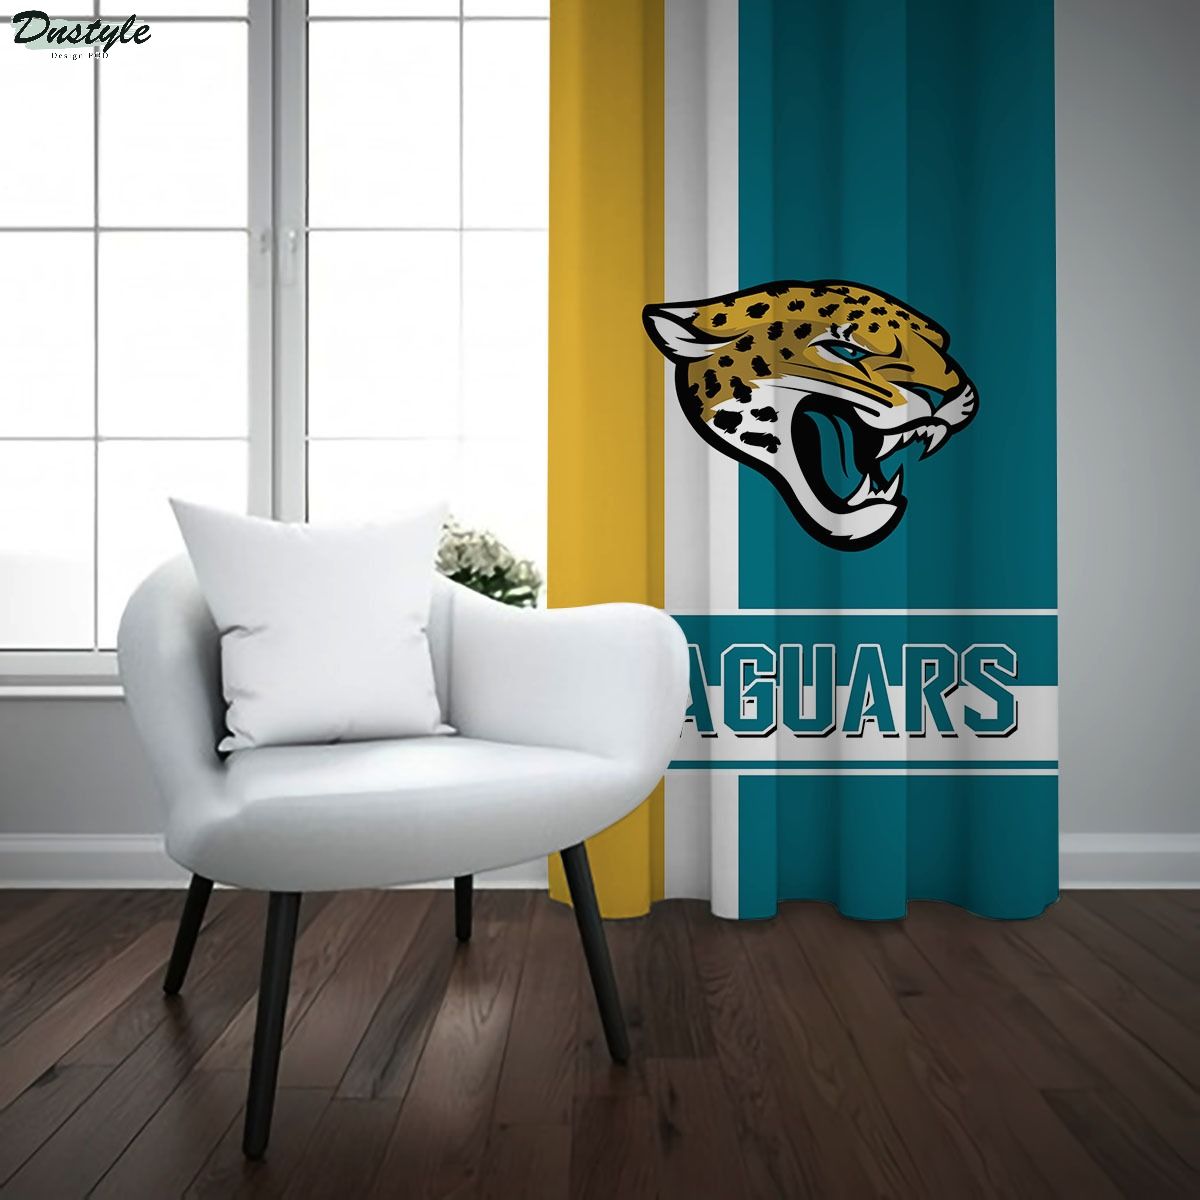 Jacksonville Jaguars NFL Window Curtains